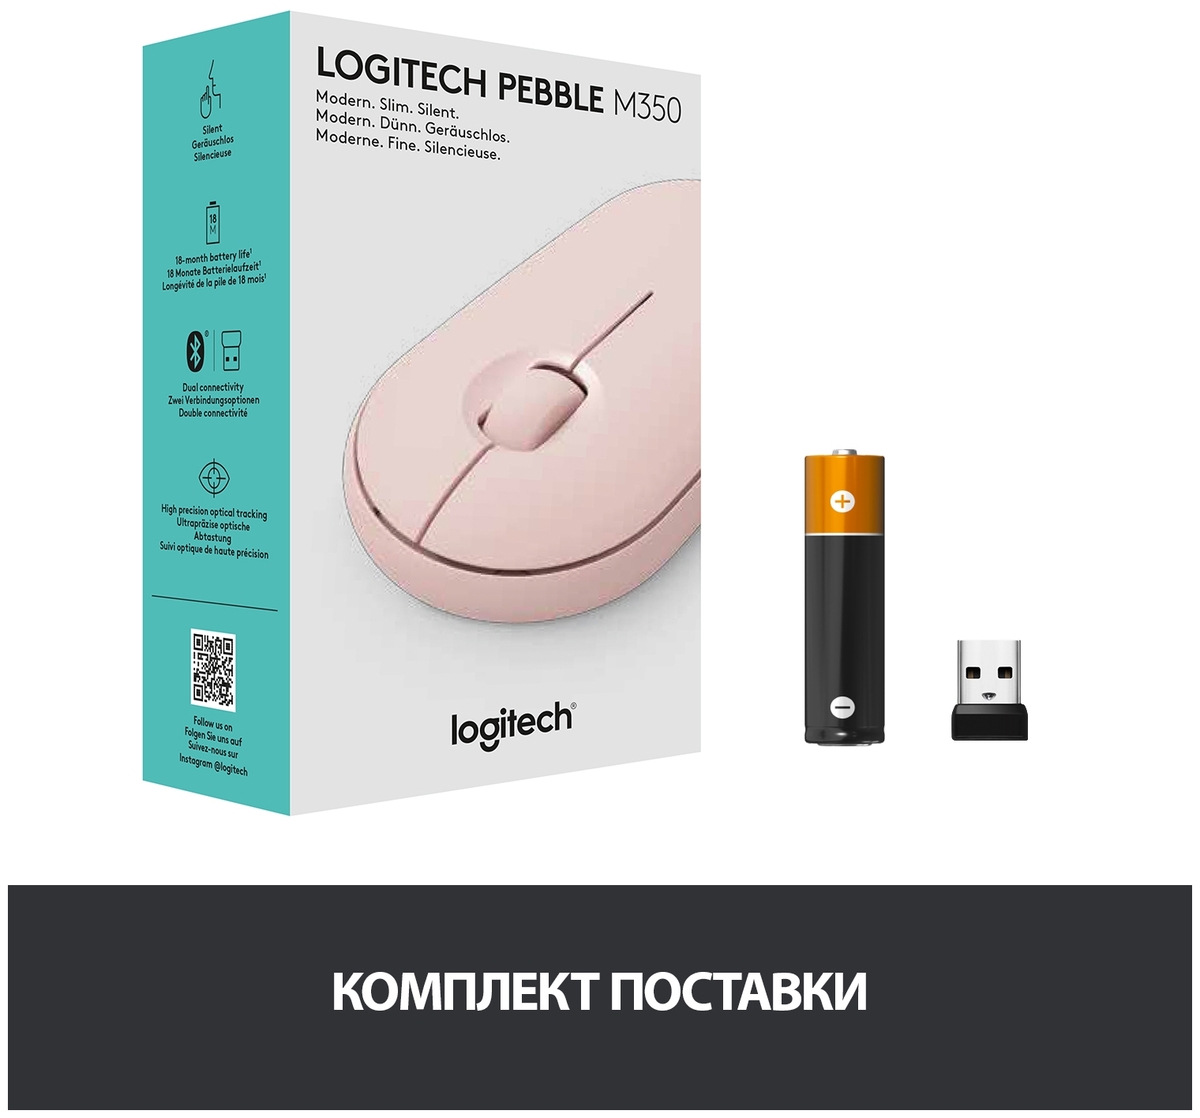 Мышь LOGITECH Wireless Mouse Pebble M350 ROSE (910-005717) Казахстан